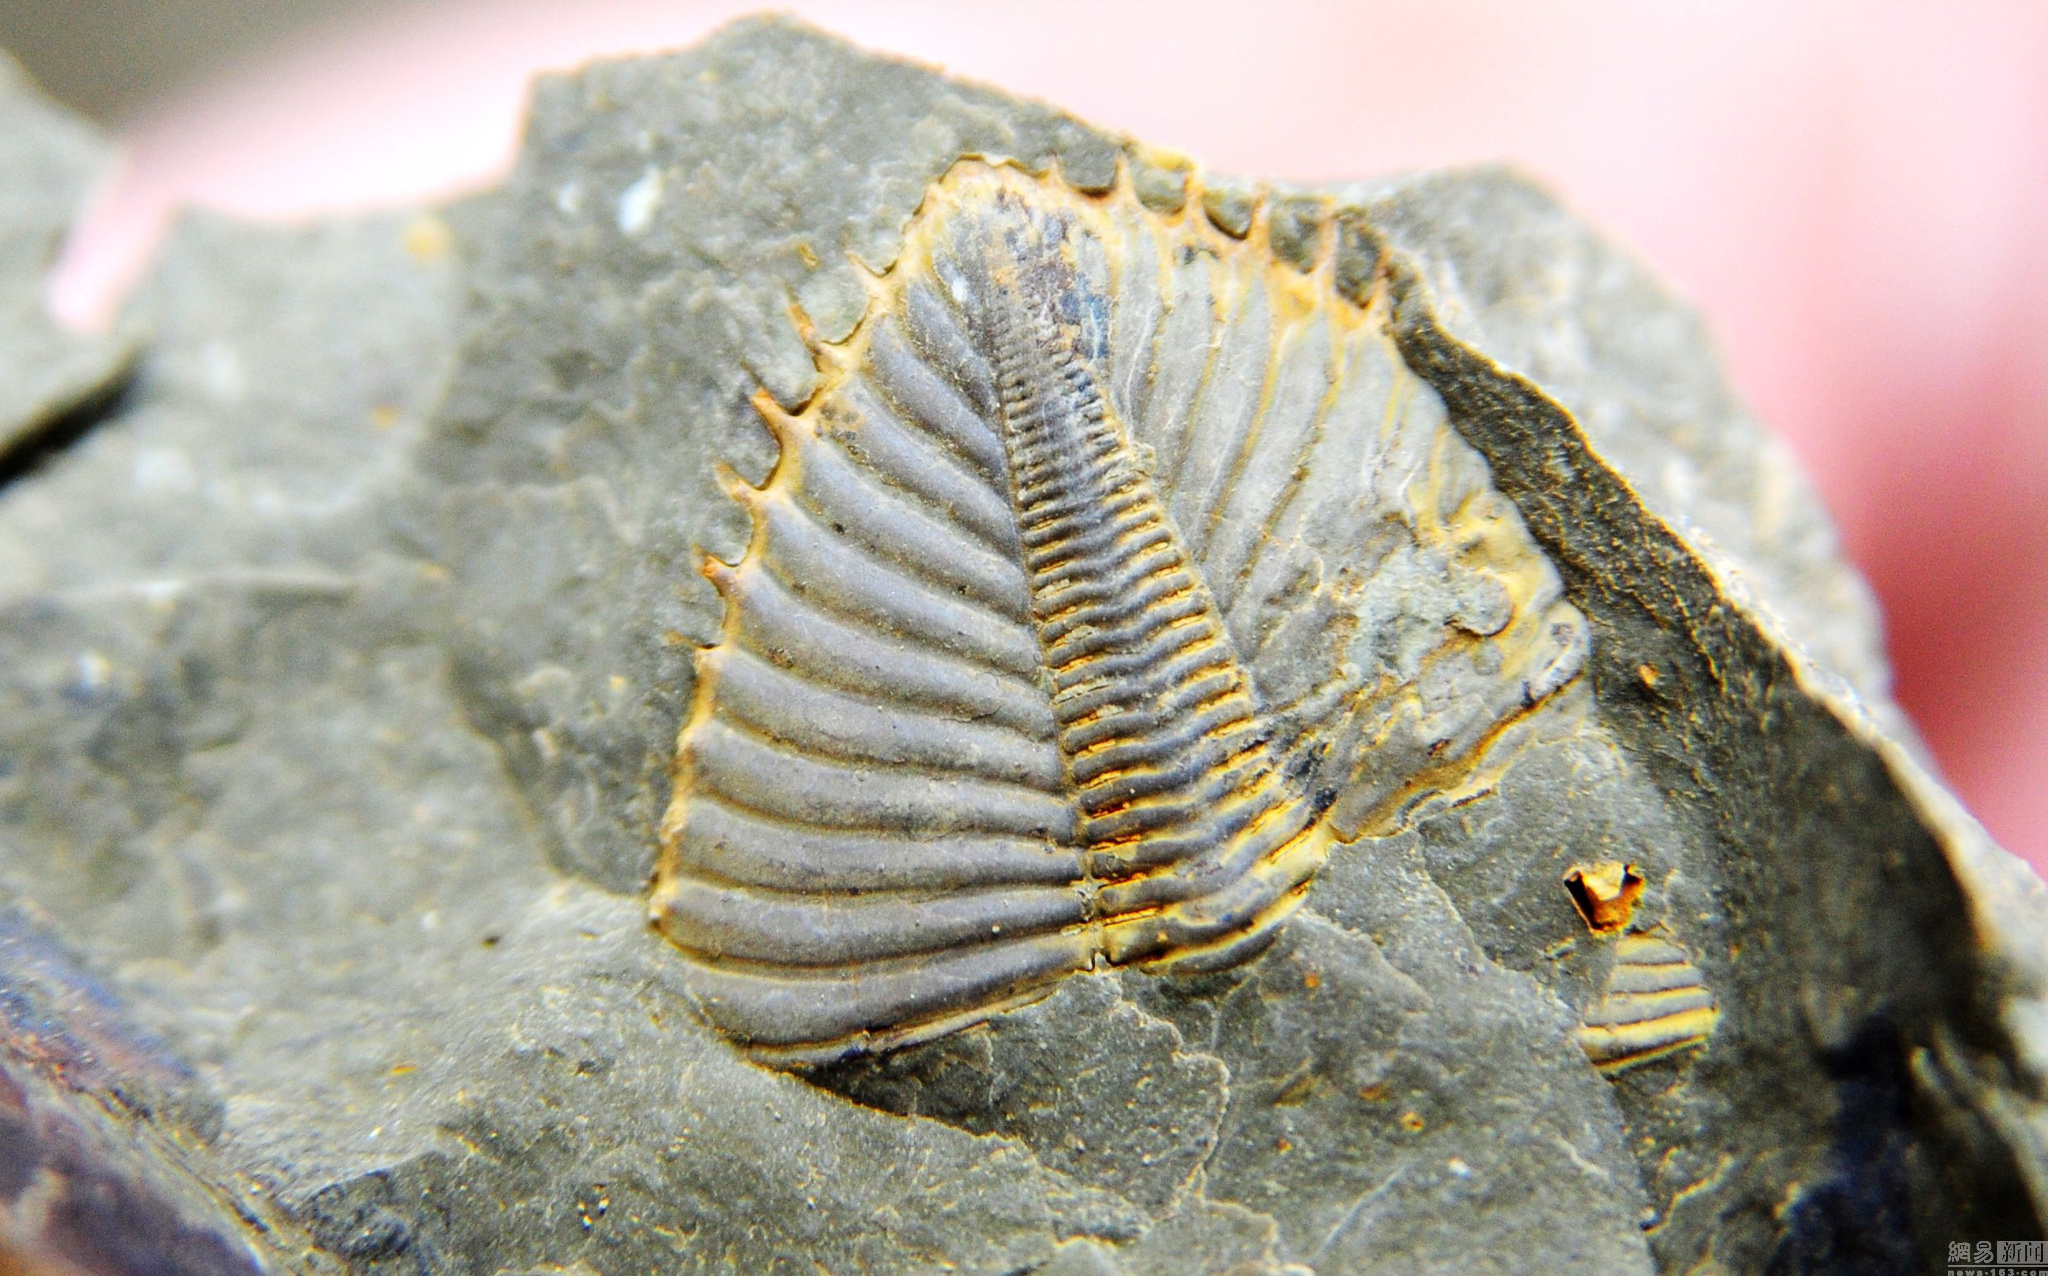 重庆现亿年前三叶虫化石 头部触须清晰可见